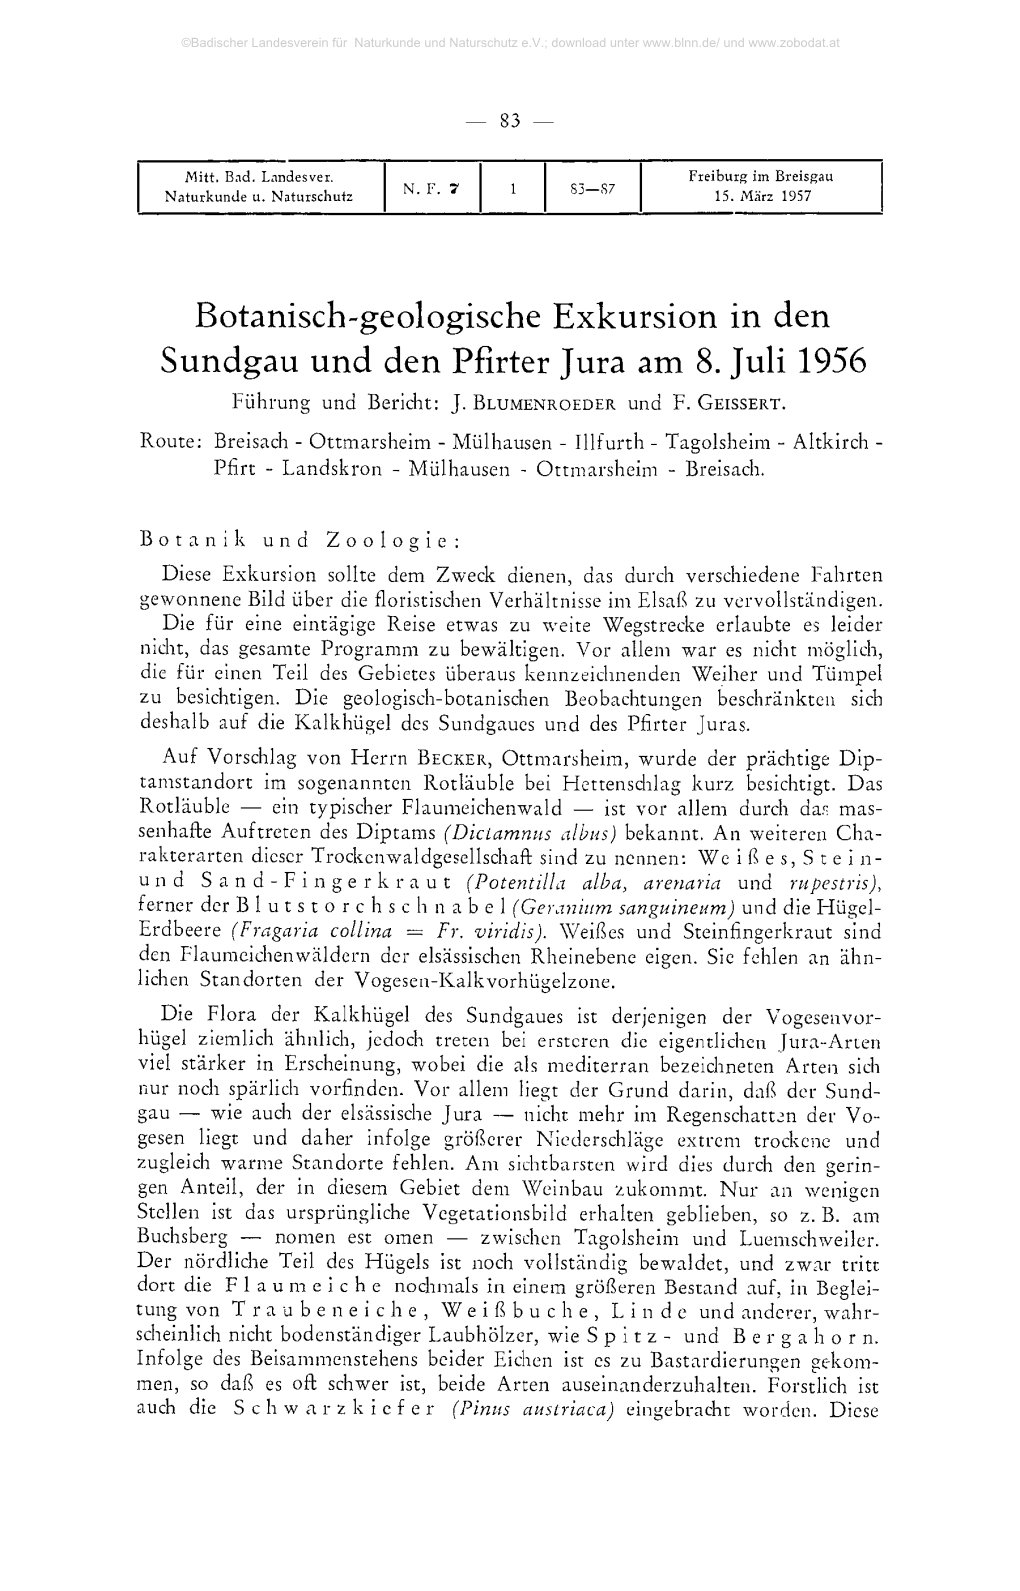 Botanisch-Geologische Exkursion in Den Sundgau Und Den Pfirter Jura Am 8. Juli 1956 Führung Und Bericht: J